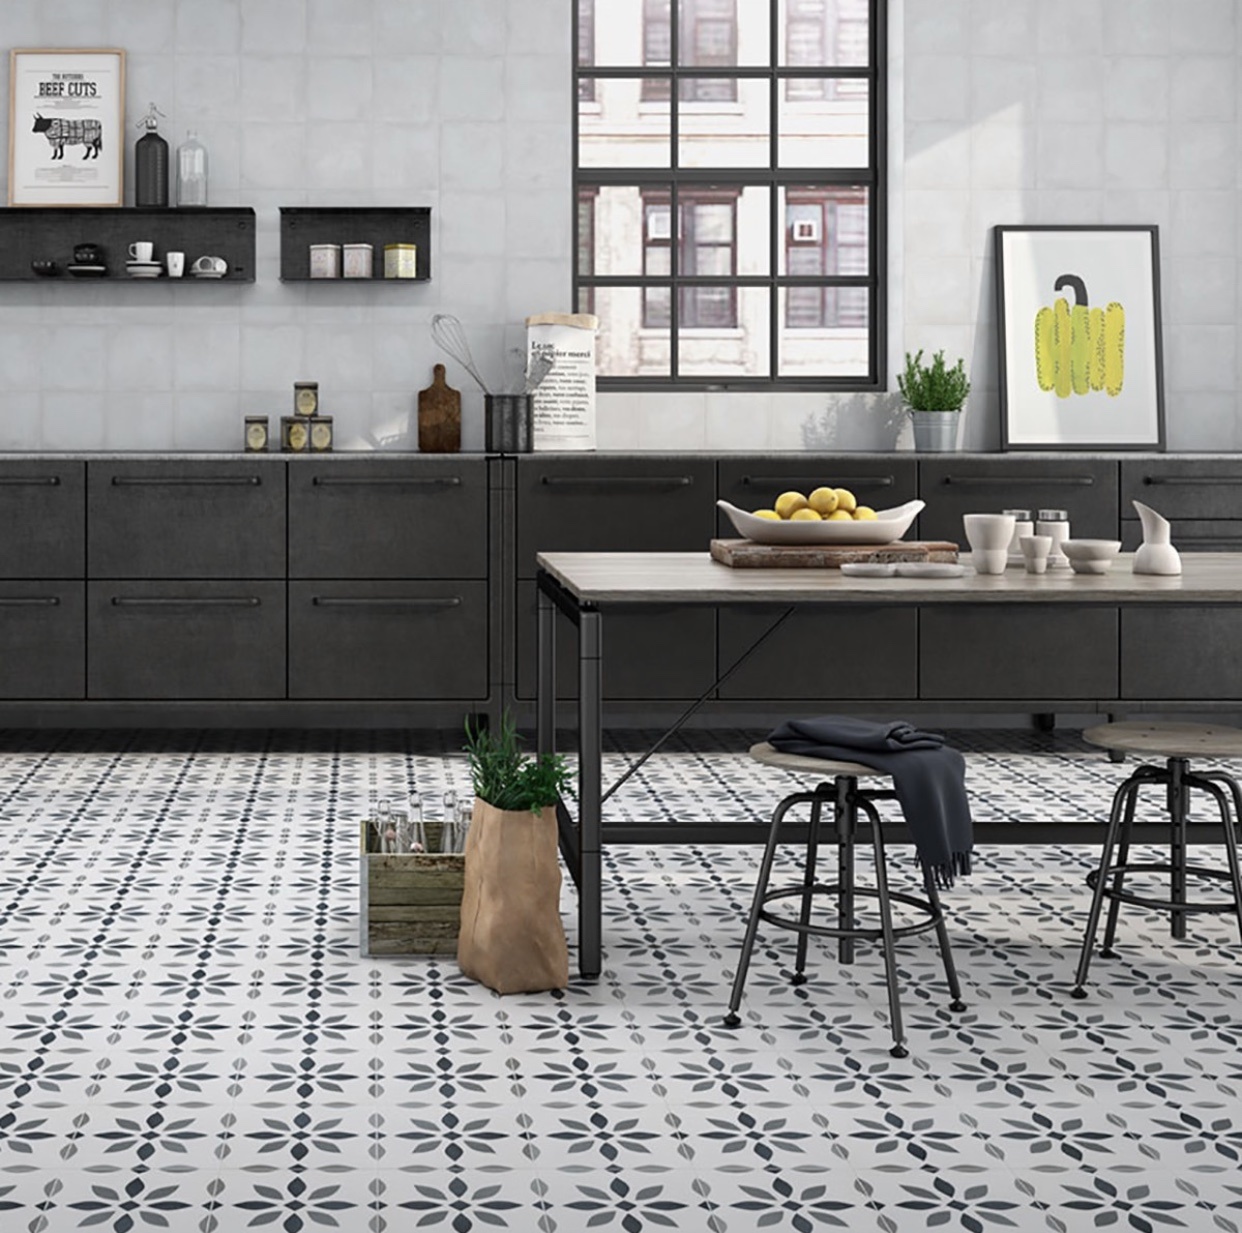 The Modern Flower Pattern Floor Tile 223x223mm Luxury Tiles